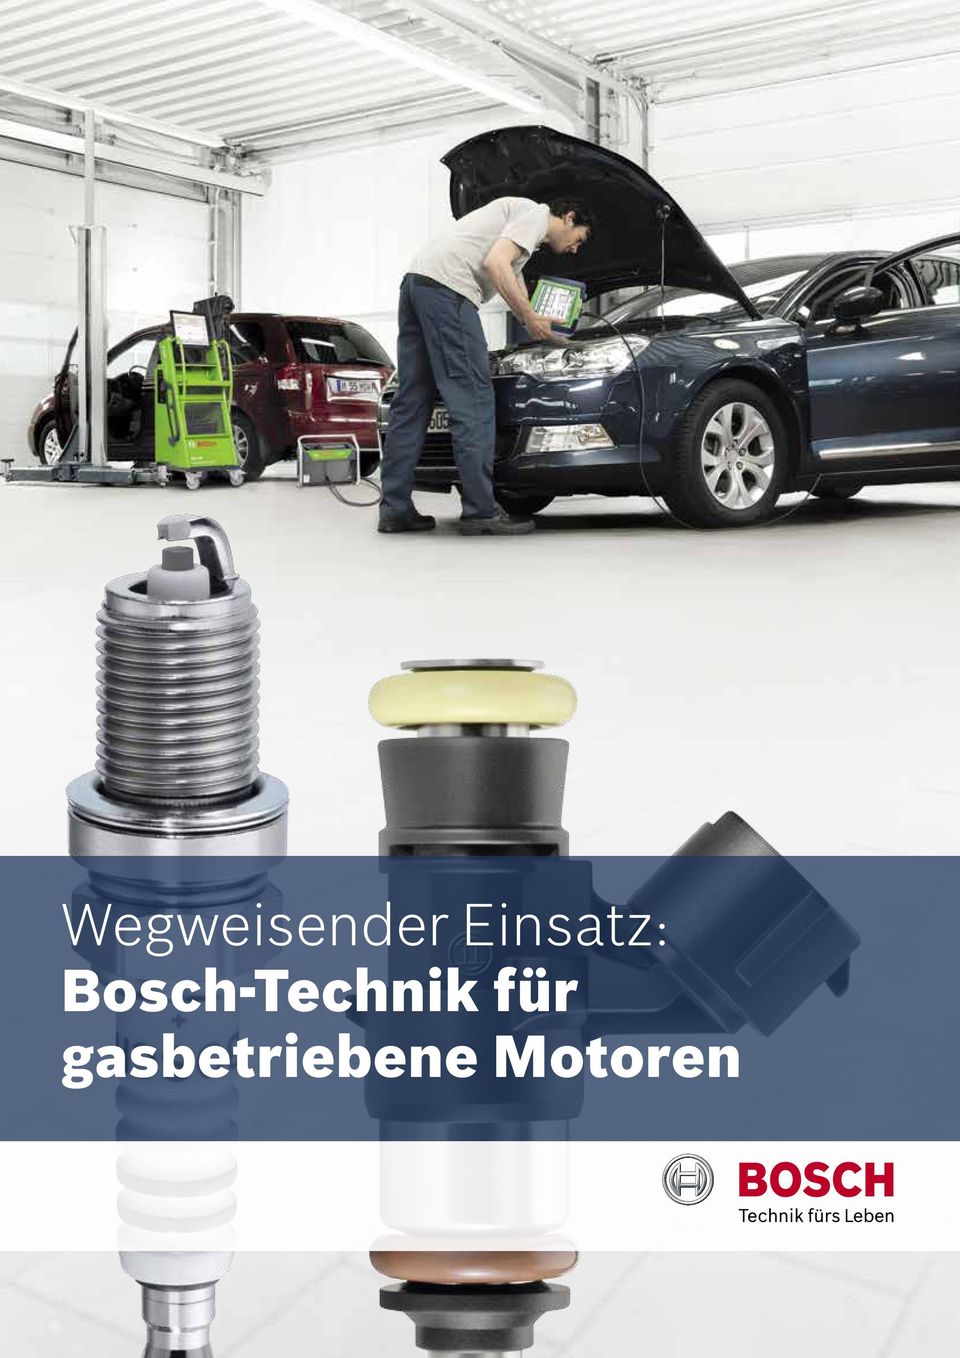 Bosch-Technik